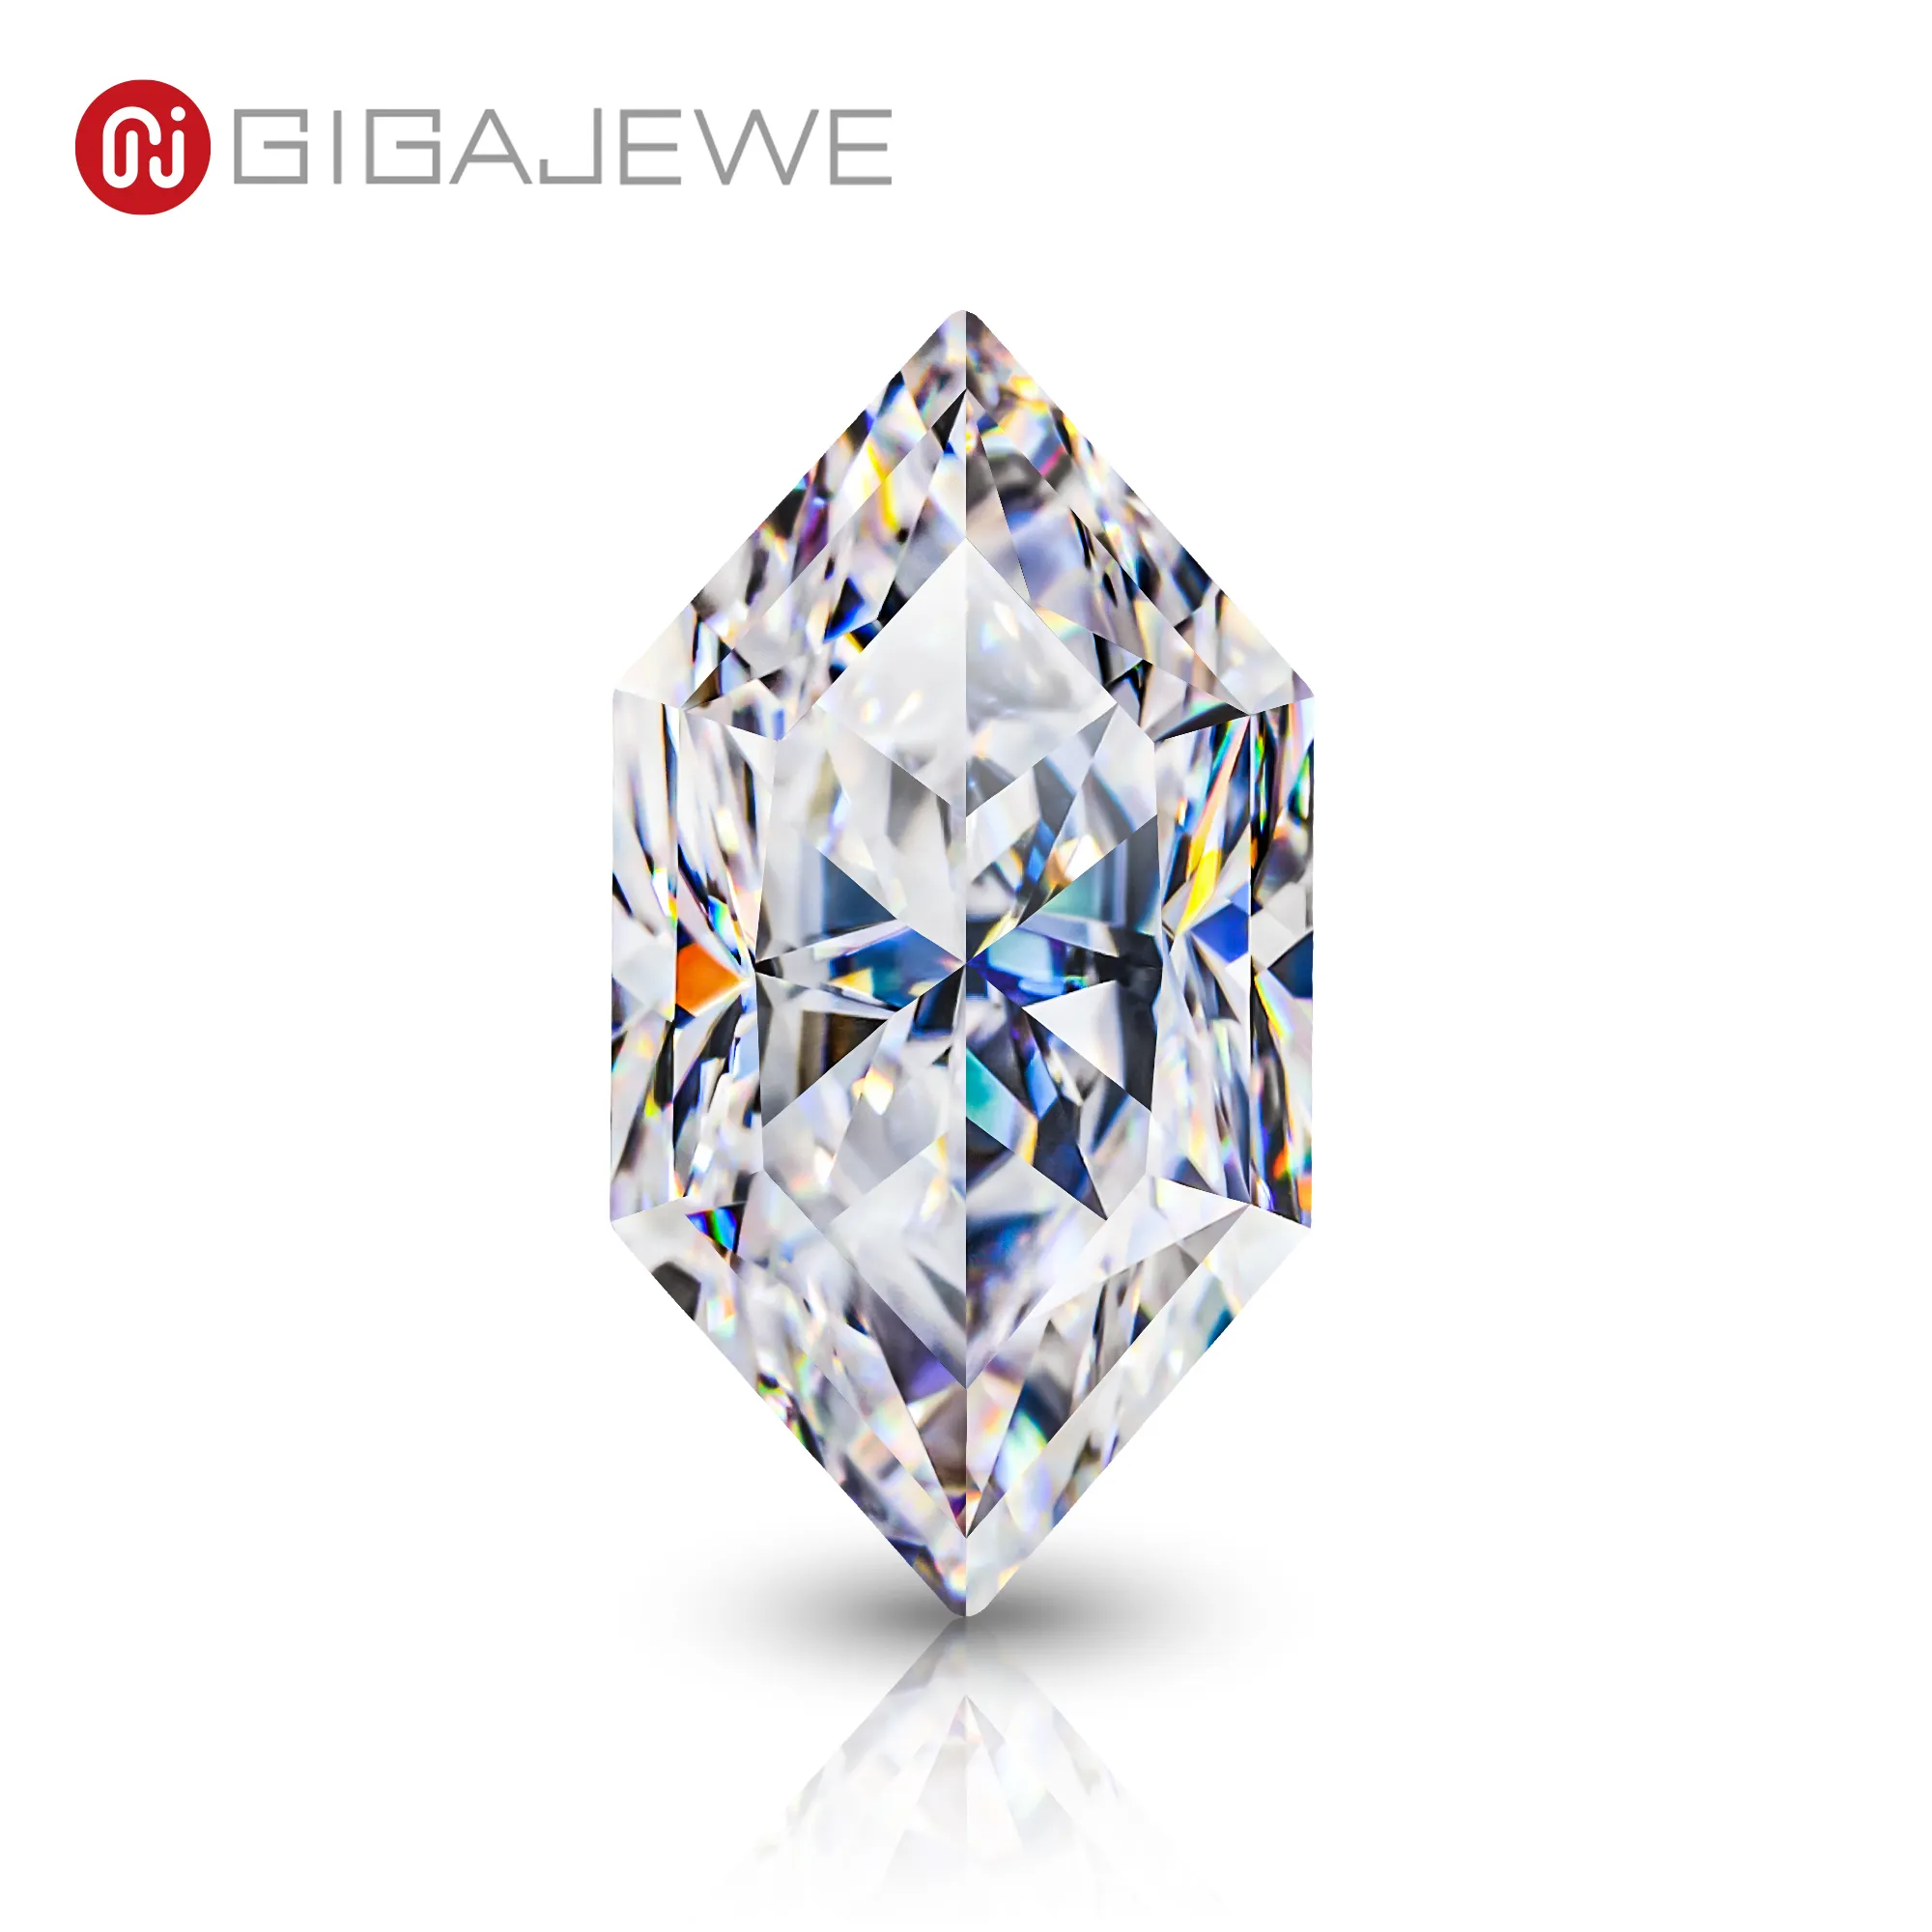 GIGAJEWE – pierre précieuse blanche D couleur Moissanite, coupe manuelle, Marquise hollandais, pierre brillante, excellente coupe pour la fabrication de bijoux